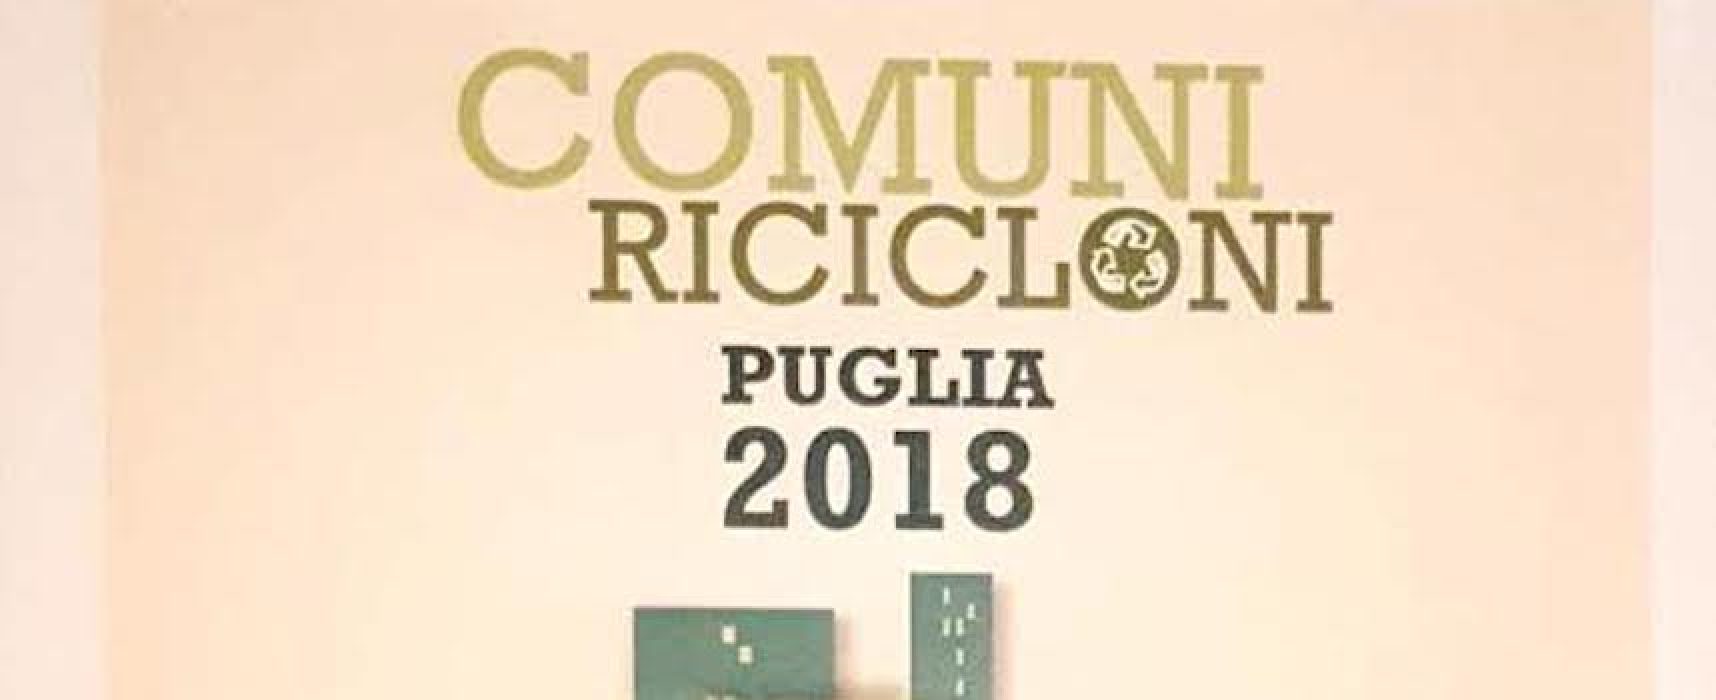 Comuni Ricicloni Puglia 2018, Bisceglie ottiene il premio di seconda categoria